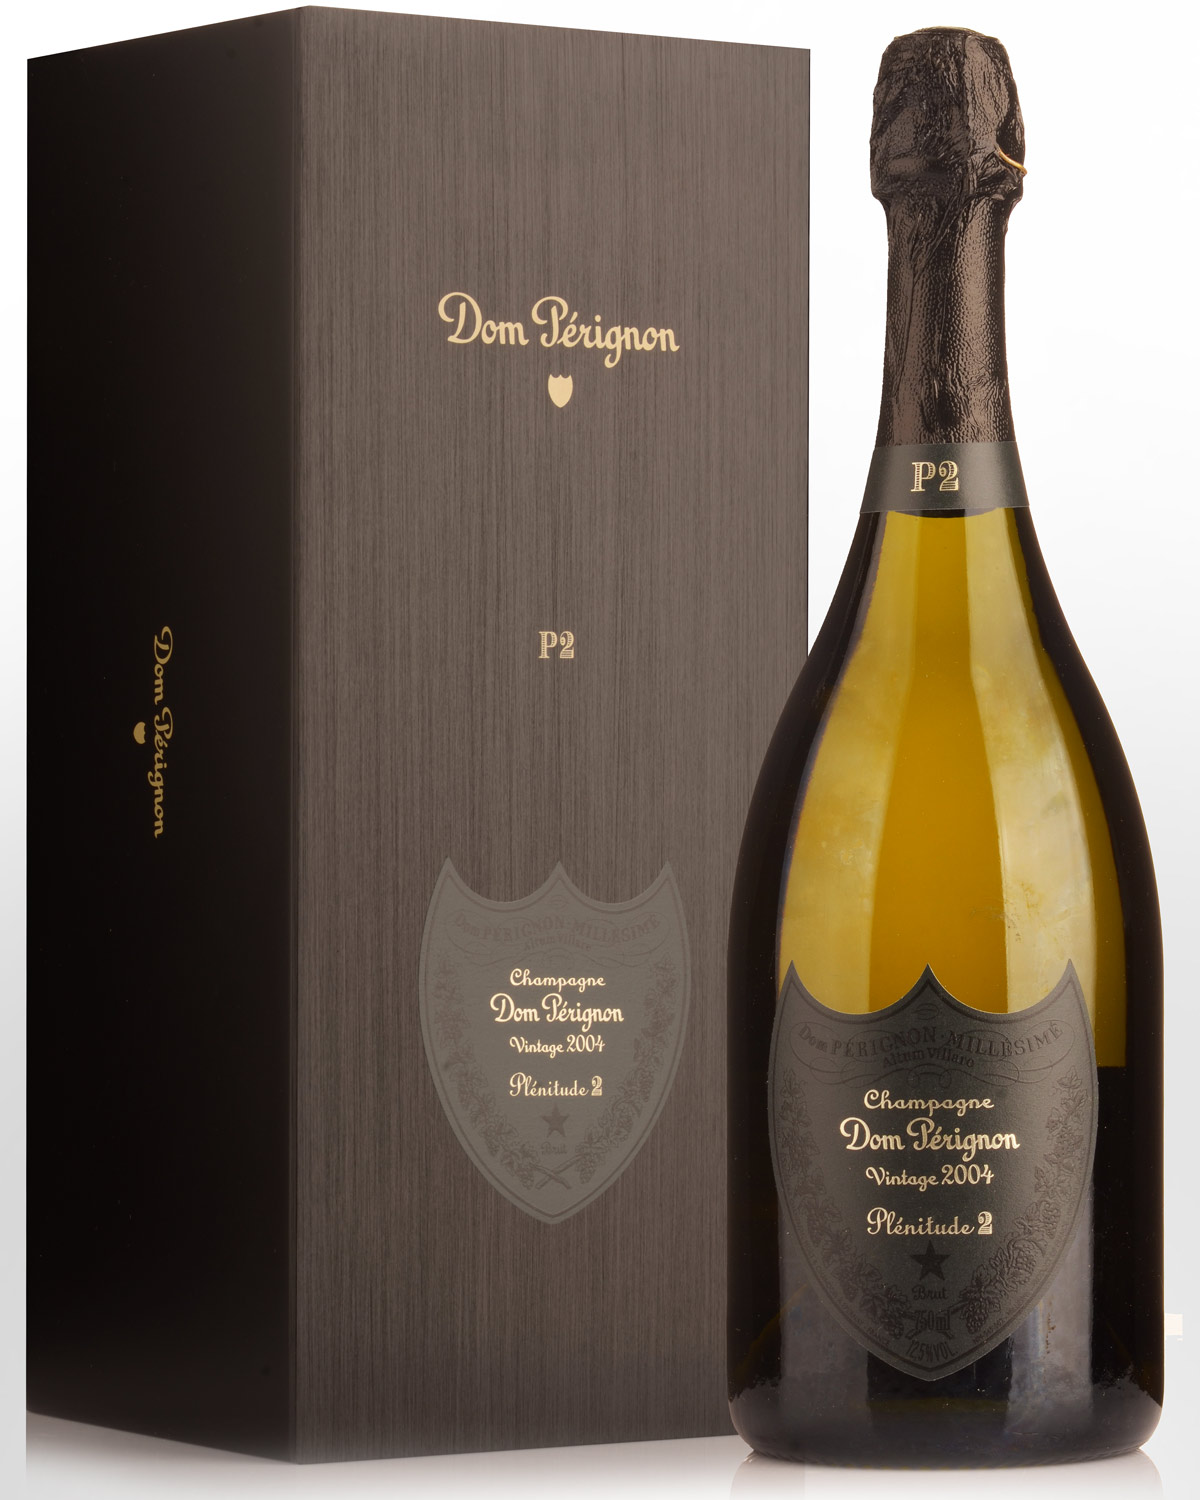 2004 Dom Perignon P2 Champagne